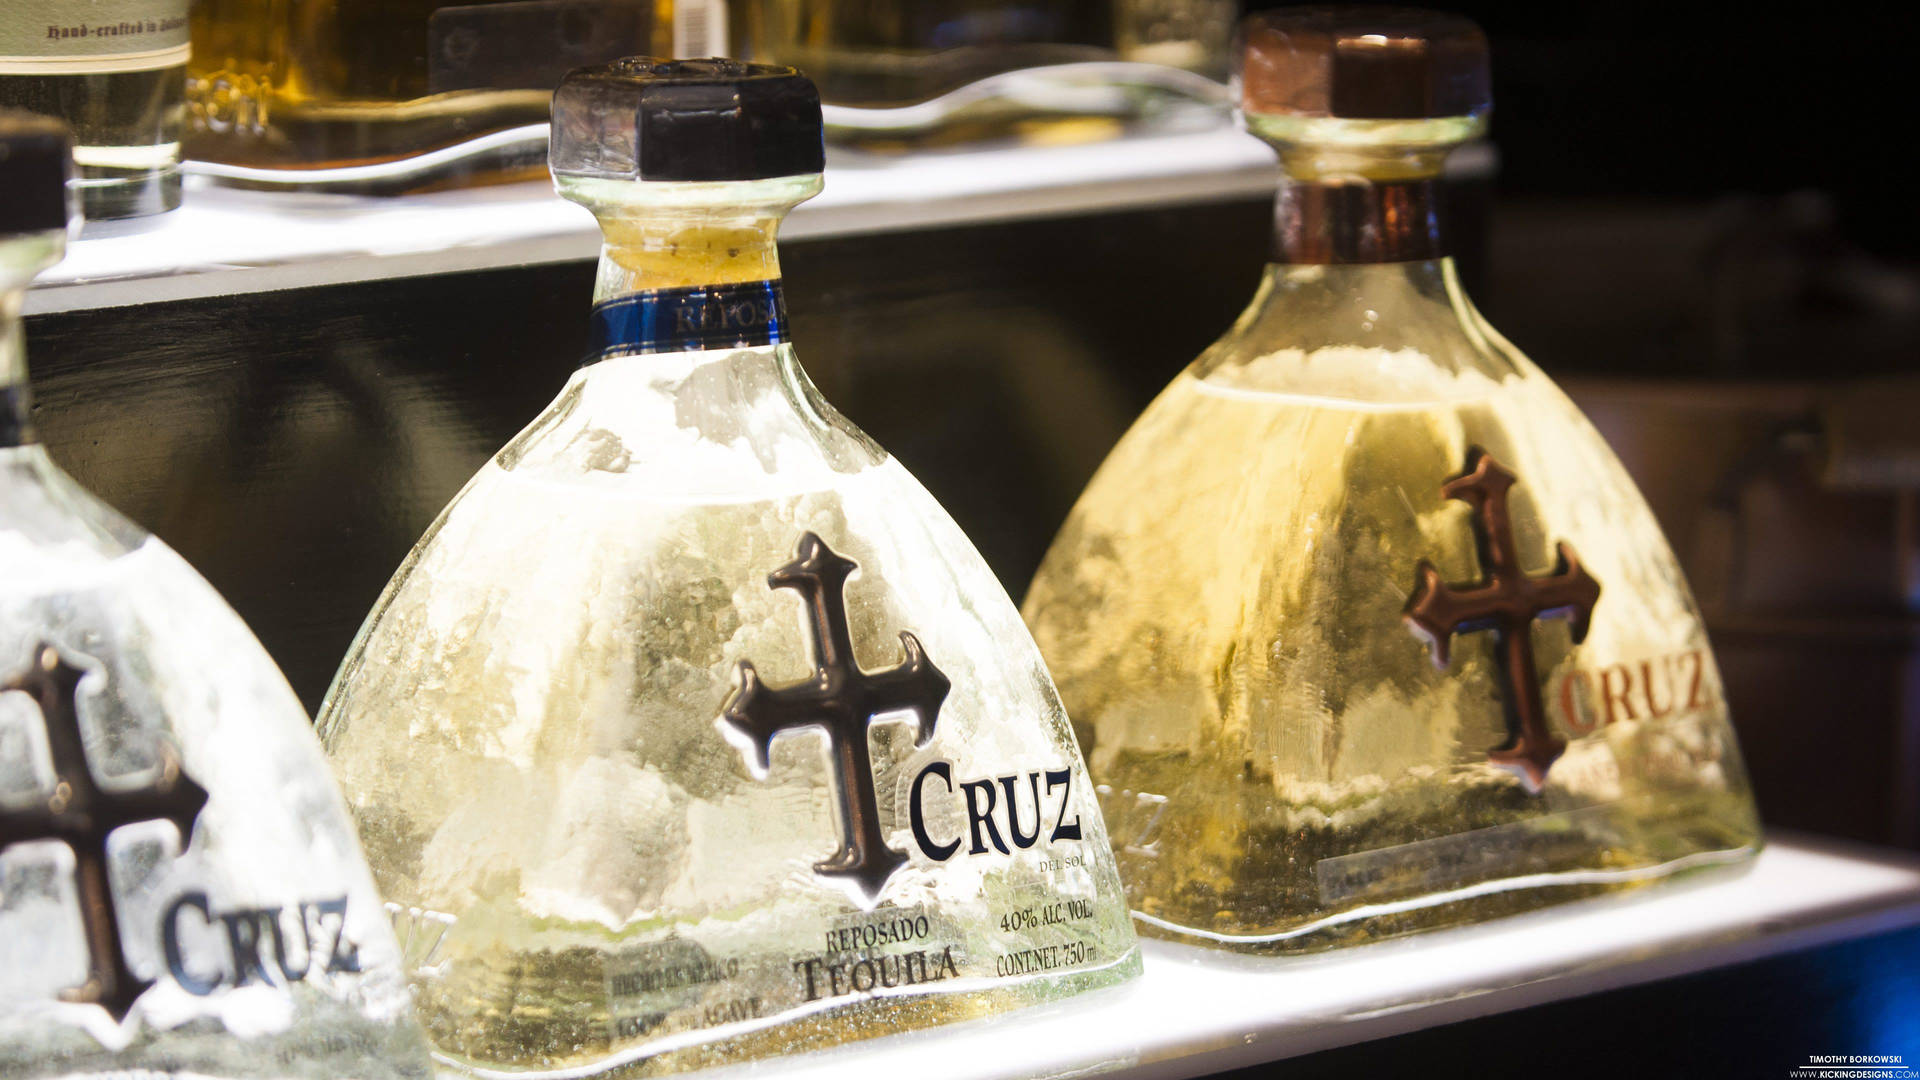 An Exquisite Display of Cruz Tequila Bottles Wallpaper